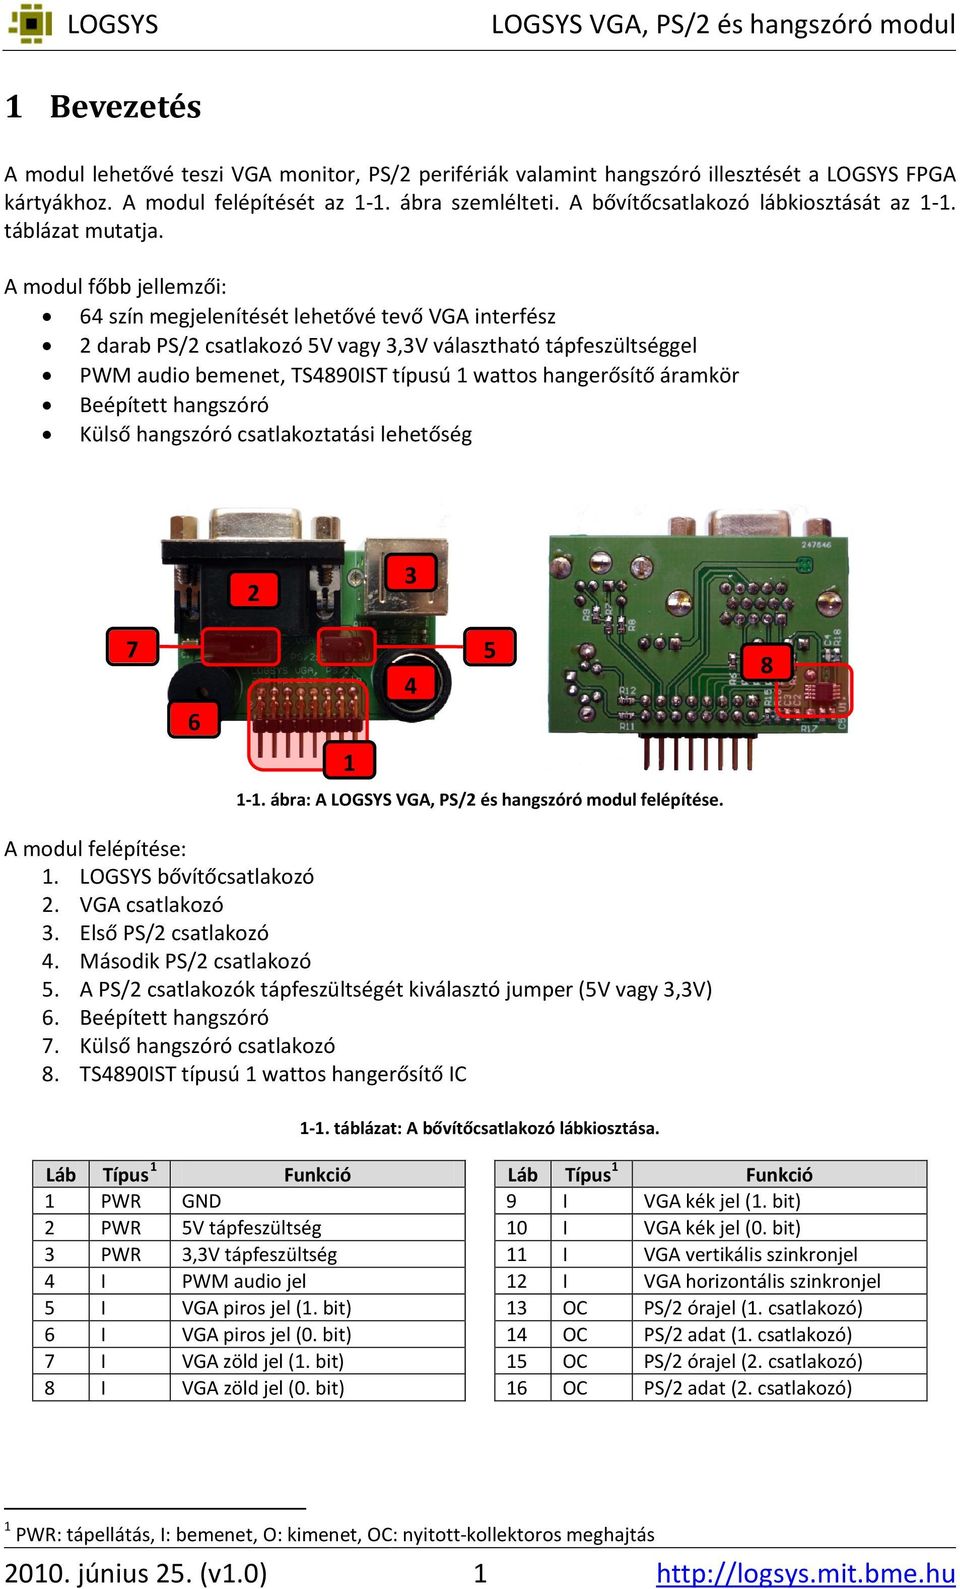 A modul főbb jellemzői: 64 szín megjelenítését lehetővé tevő VGA interfész 2 darab PS/2 csatlakozó 5V vagy 3,3V választható tápfeszültséggel PWM audio bemenet, TS4890IST típusú 1 wattos hangerősítő